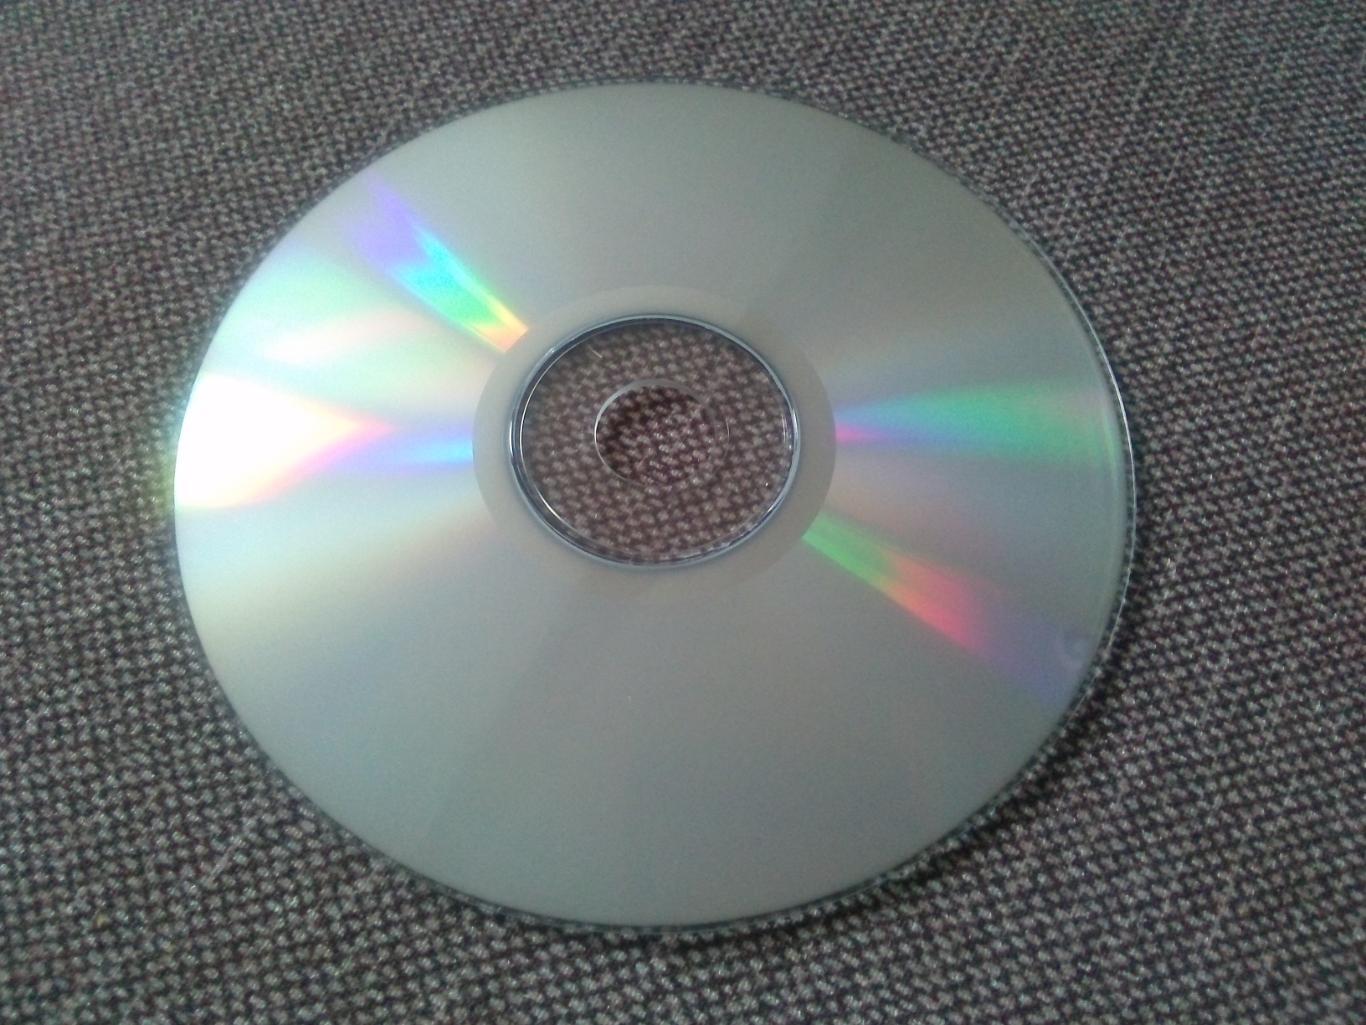 MP - 3 CD диск : группаSymphony X1995 - 2008 гг. 8 альбомов Рок - музыка 3